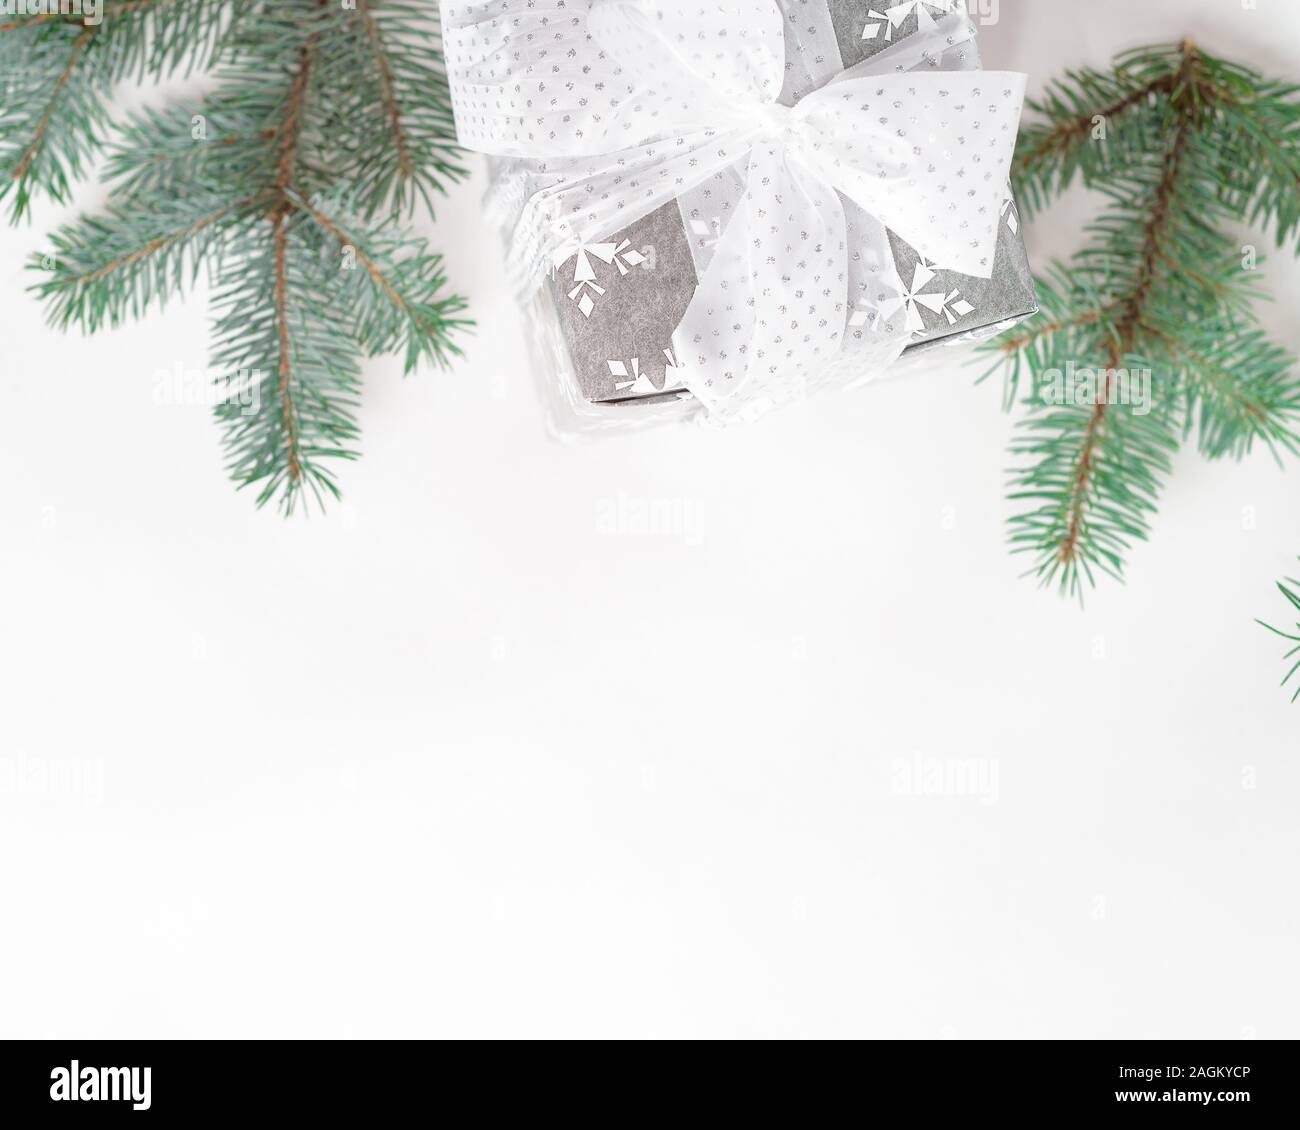 Caja de regalo de navidad con decoración festiva en tono plateado Foto de stock